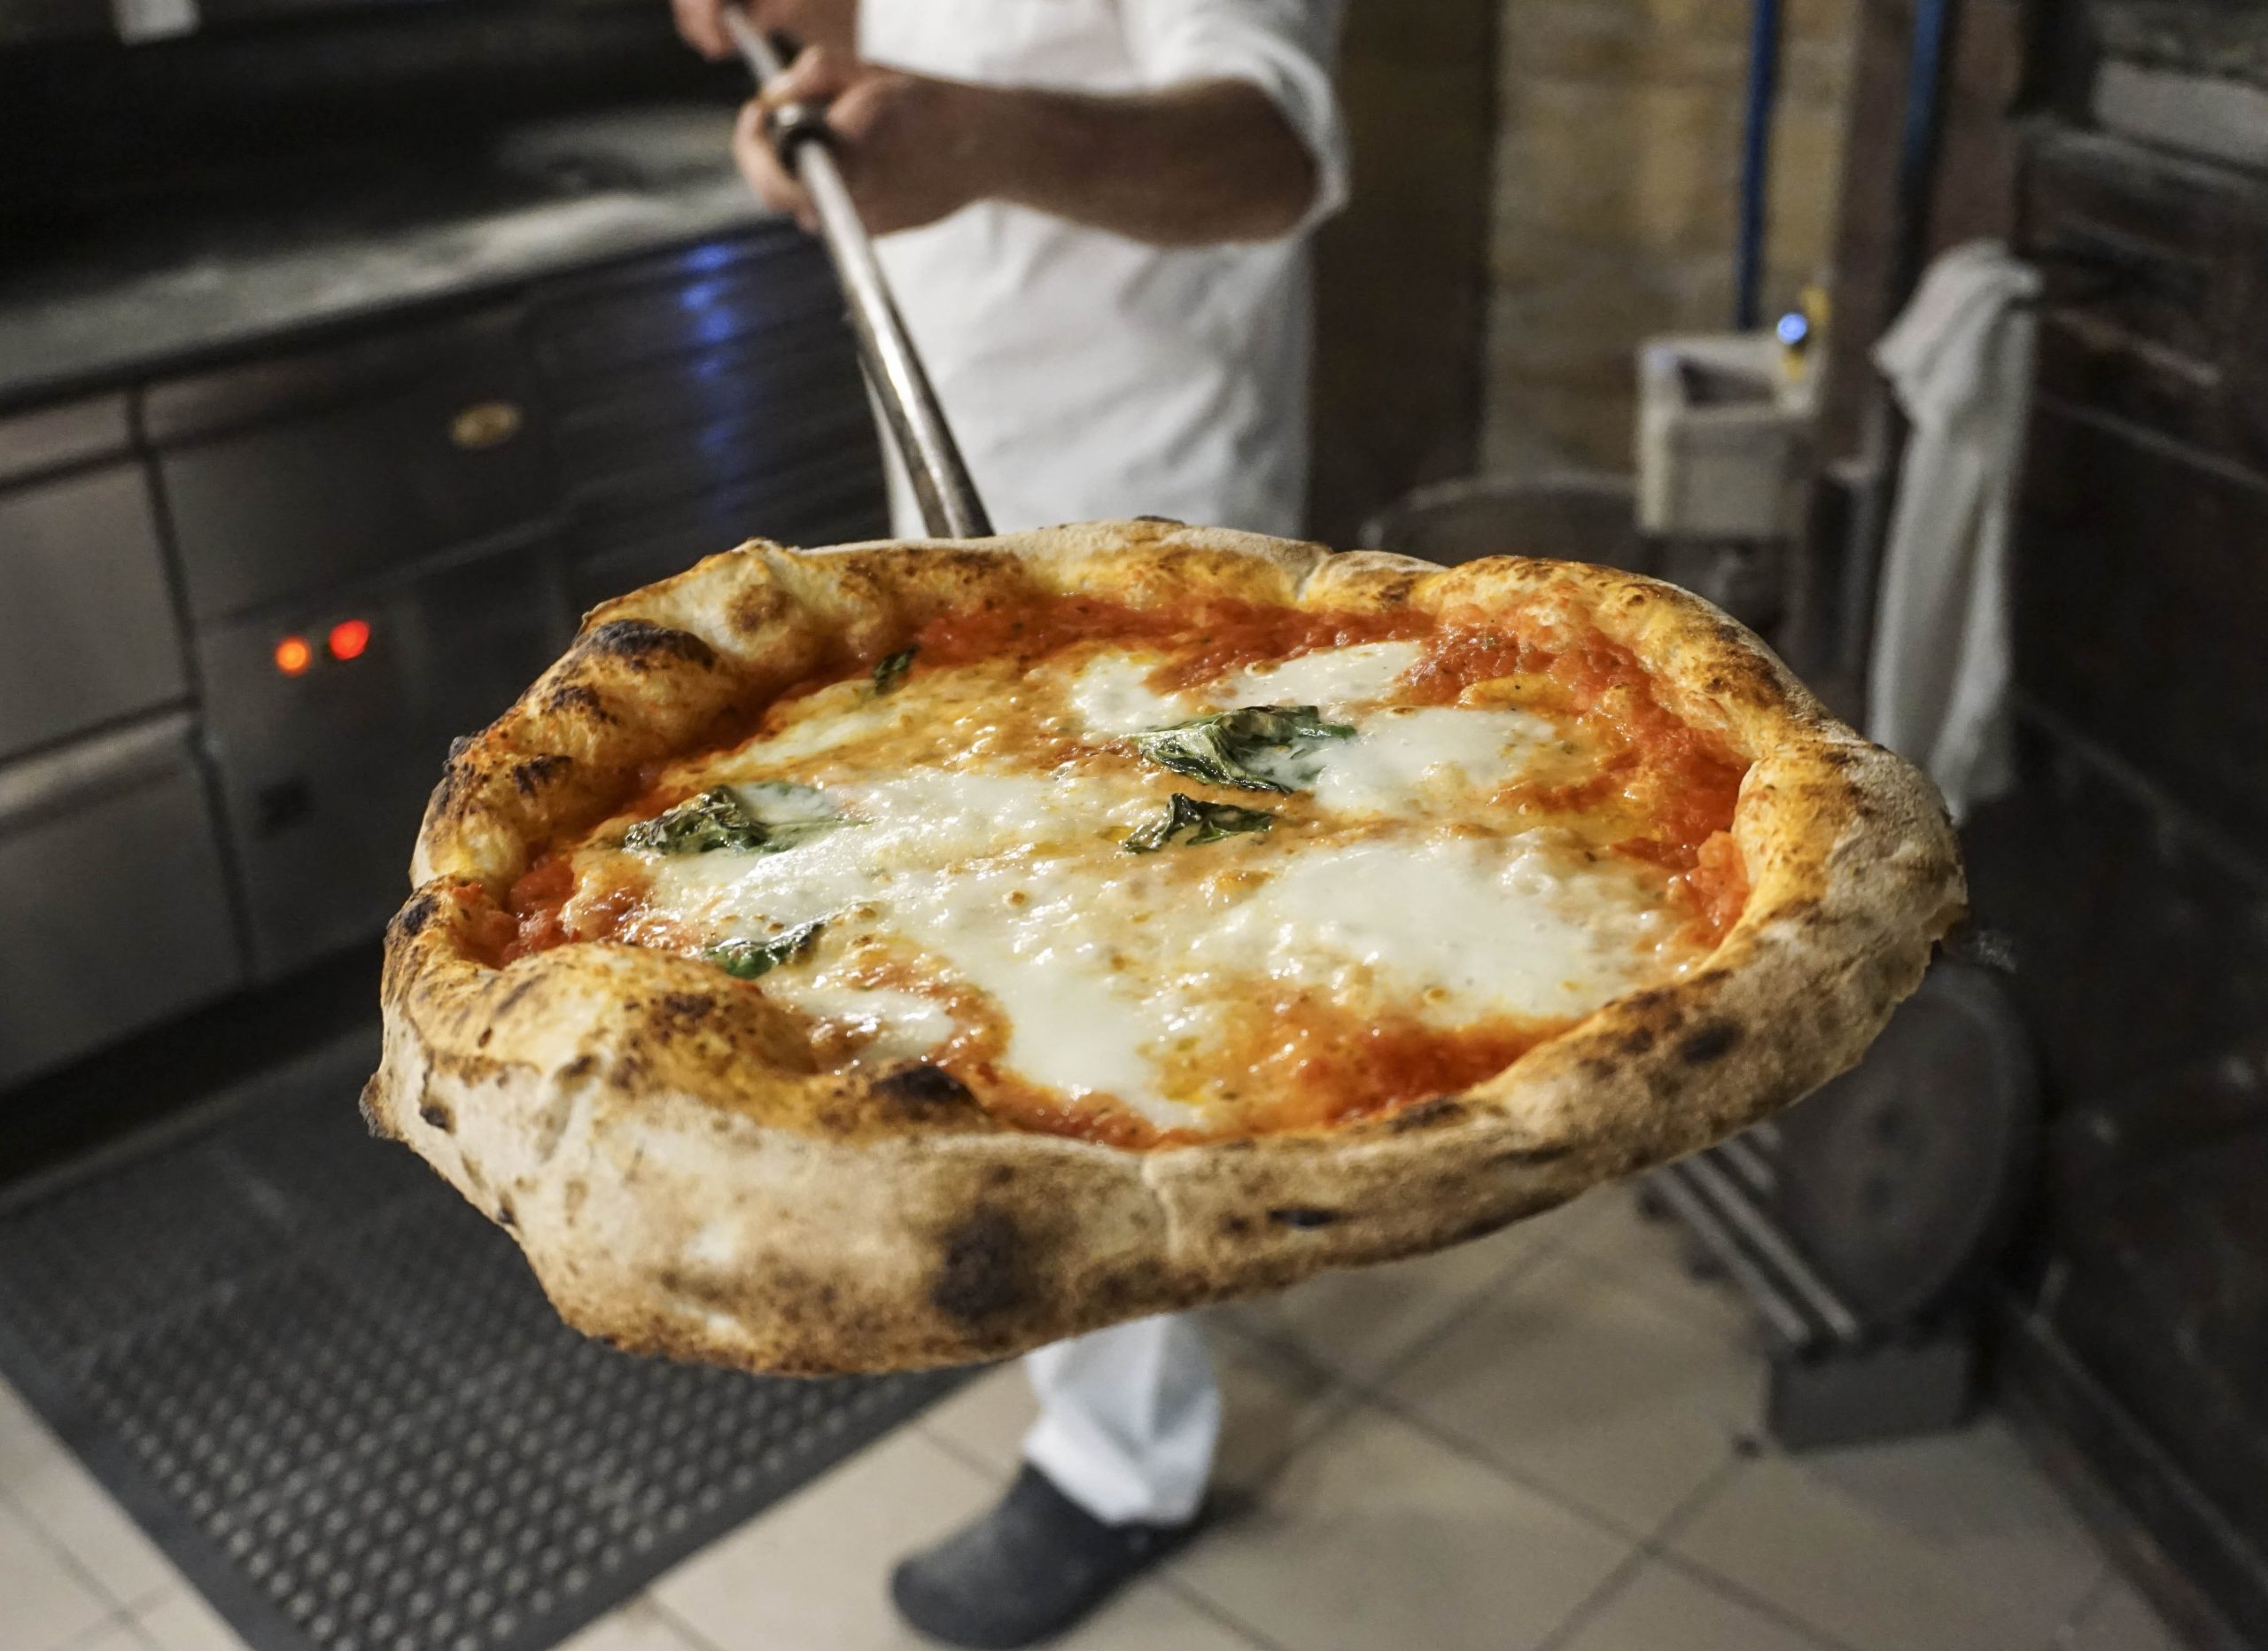 Gianni Annoni – Az igazi pizza maga a csoda